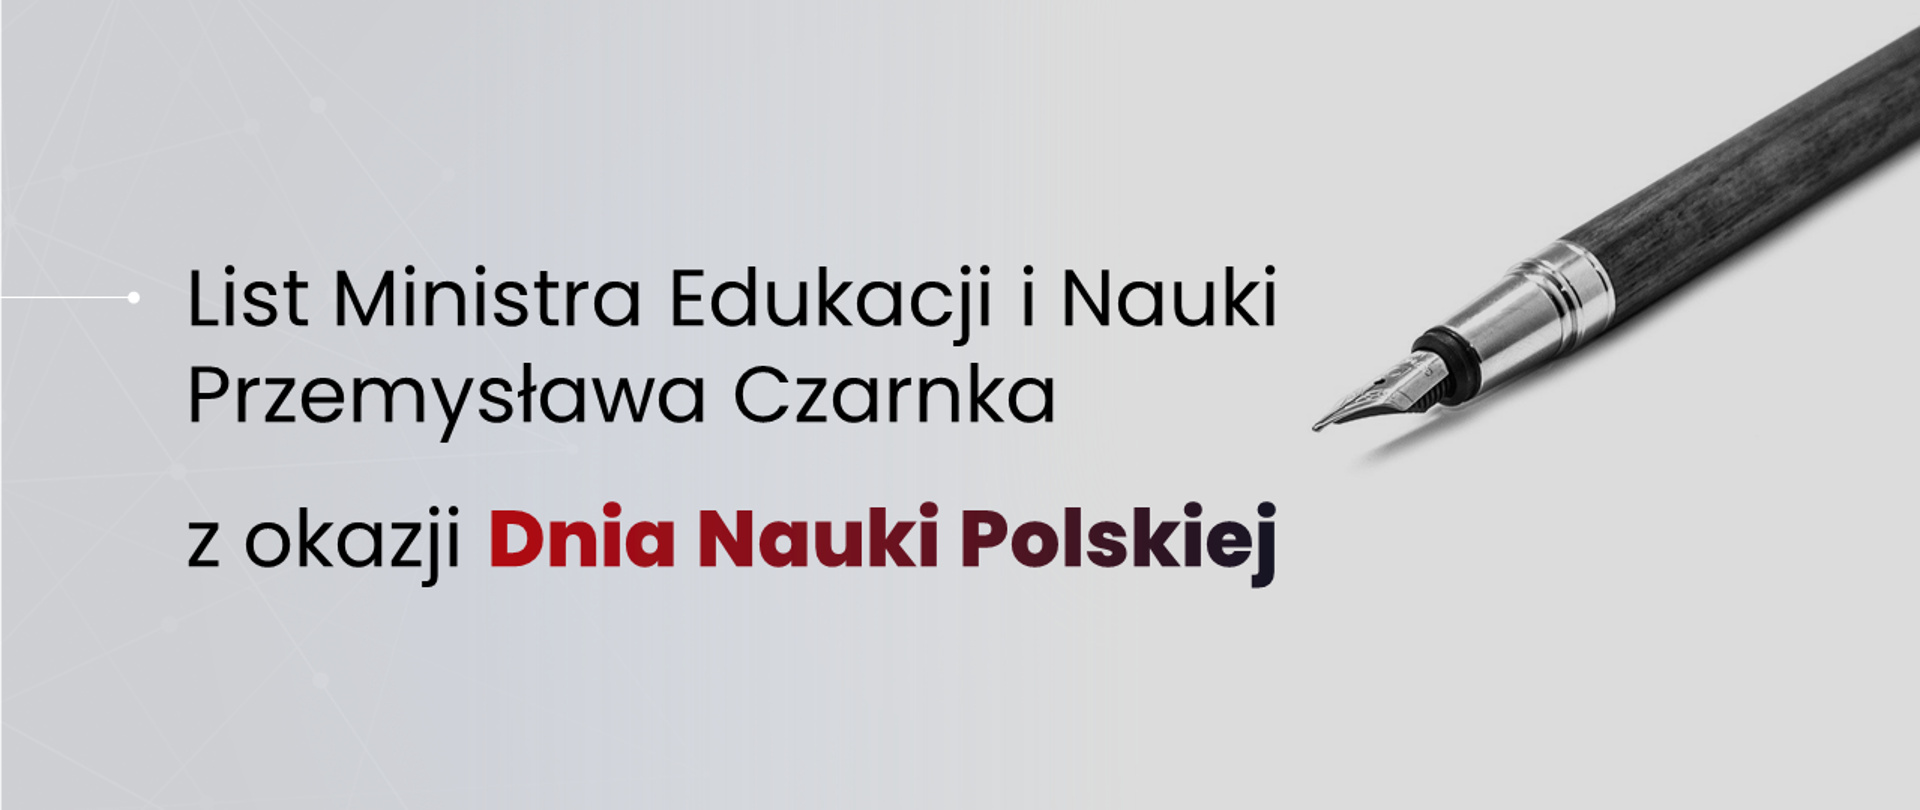 Grafika z piórem i tekstem: "List Ministra Edukacji i Nauki Przemysława Czarnka z okazji Dnia Nauki Polski"